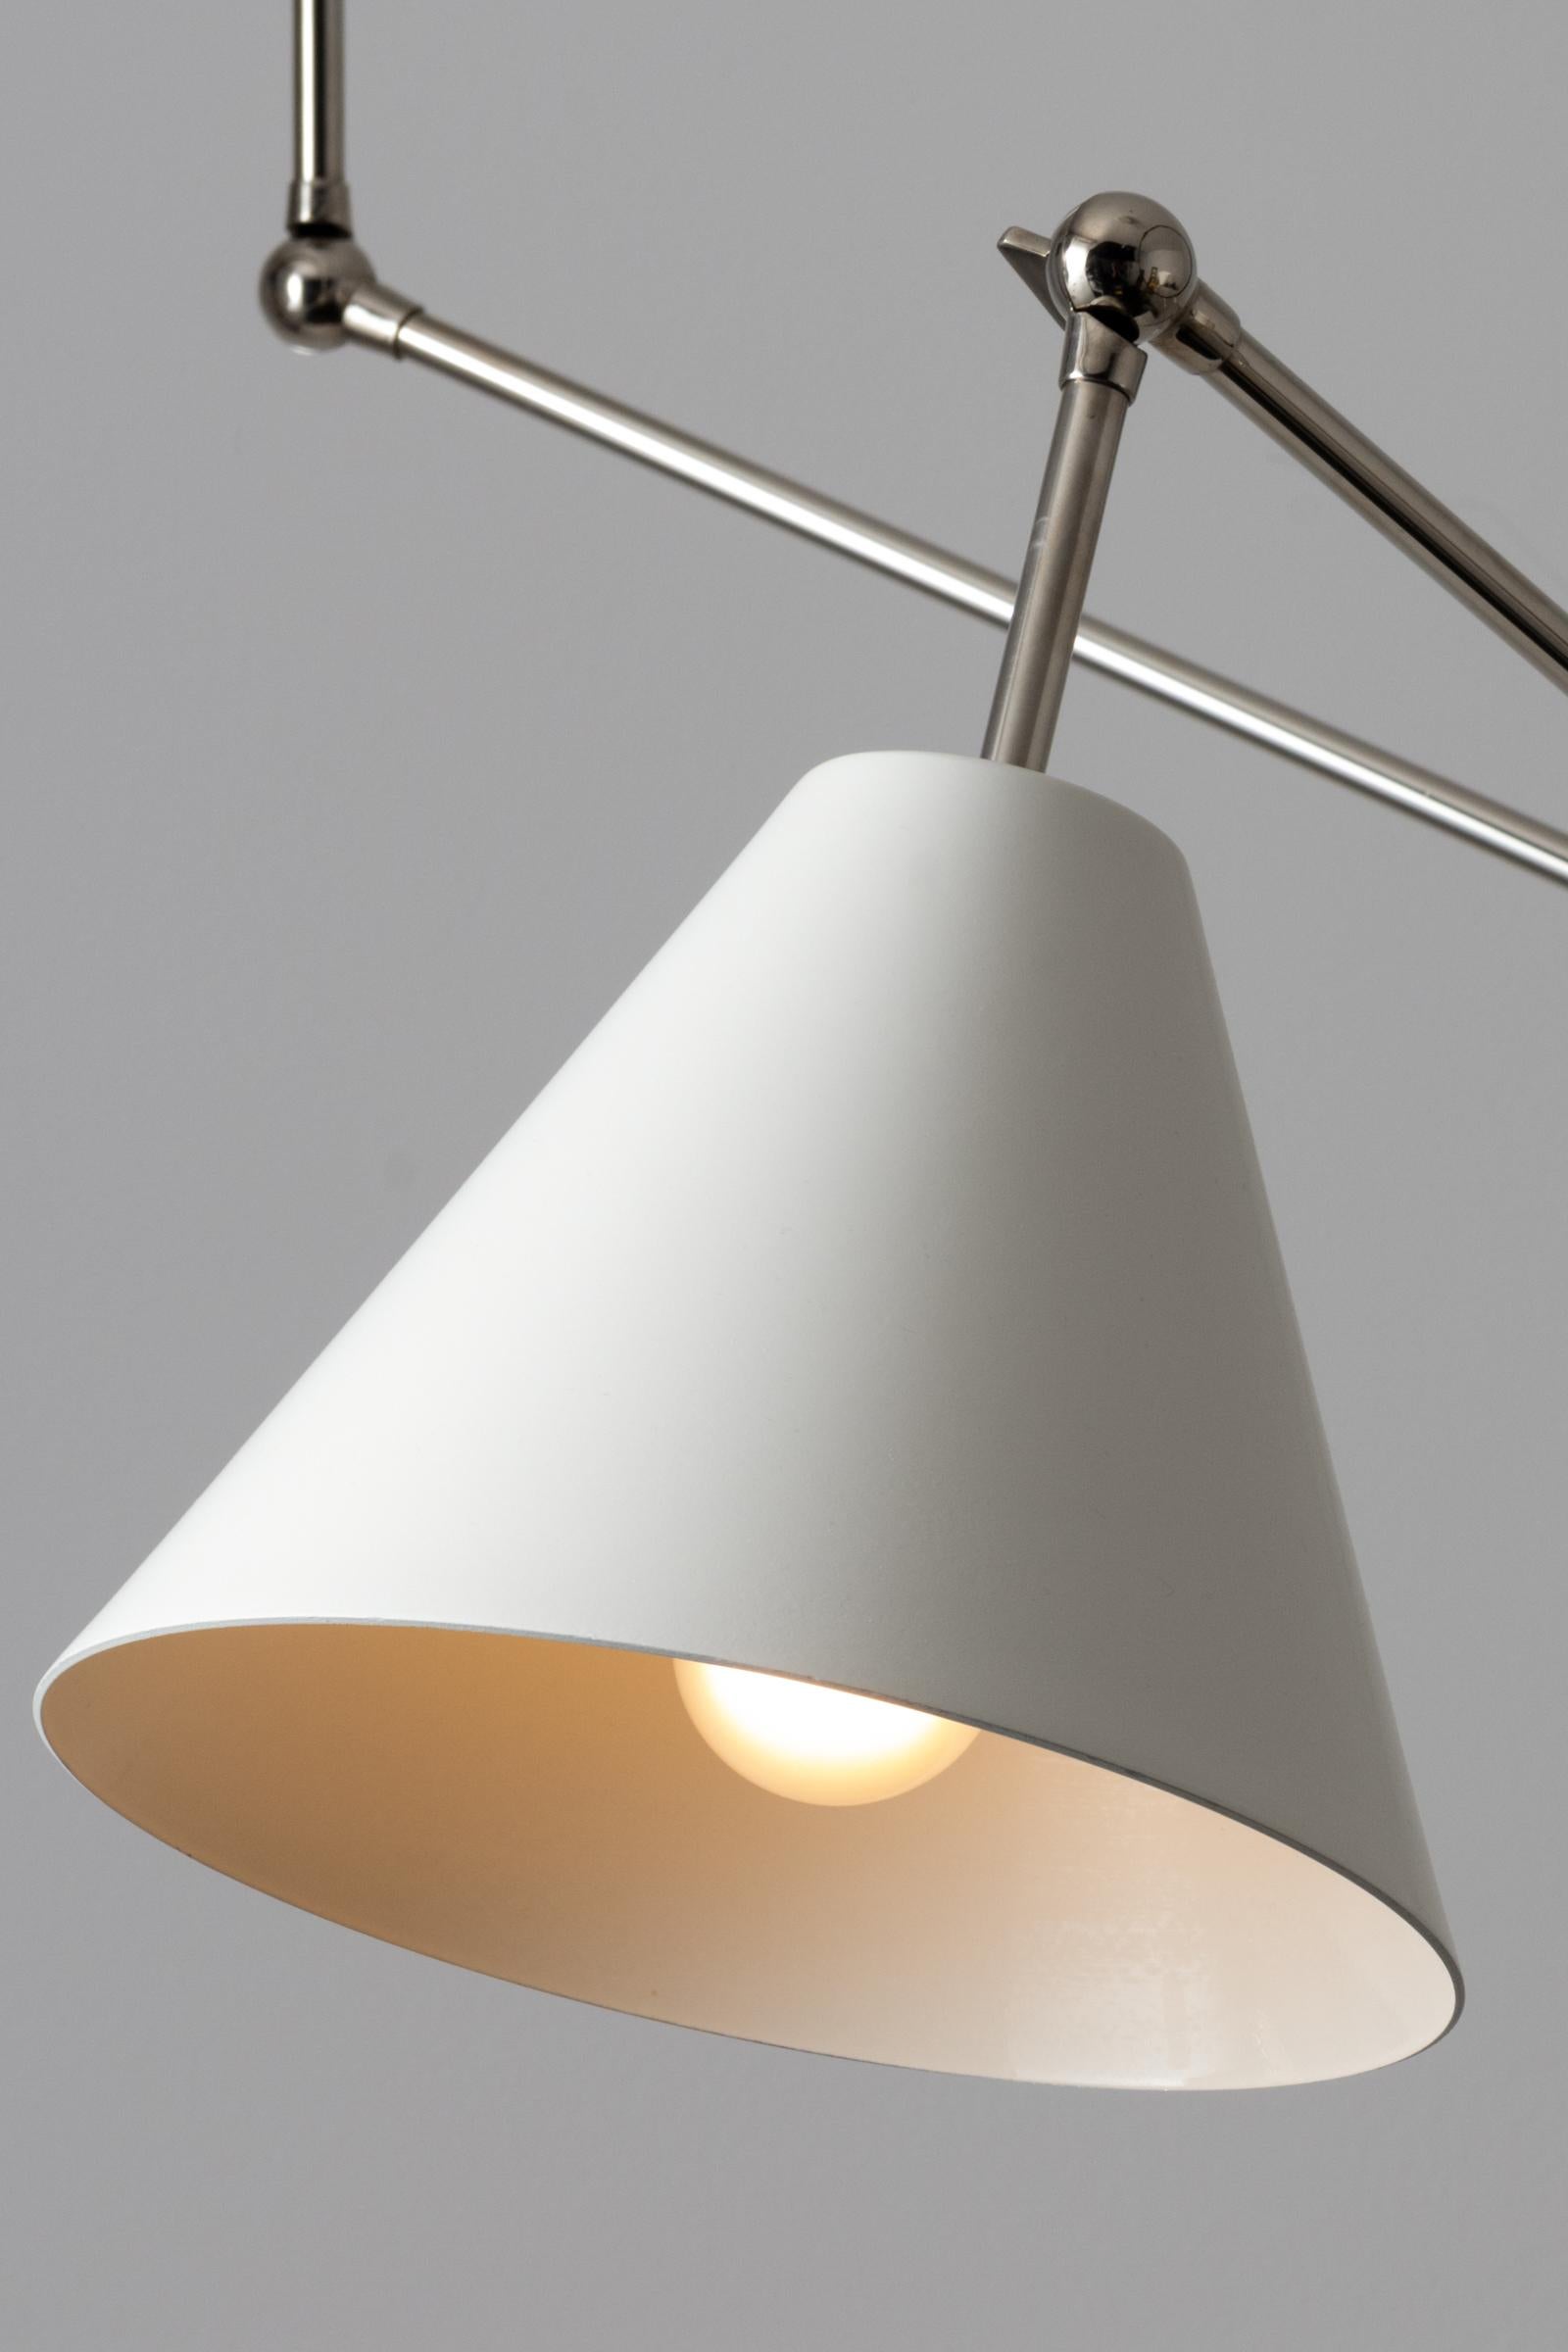 Mid-Century Modern Triennale Floor Lamp by Angelo Lelli for Arredoluce